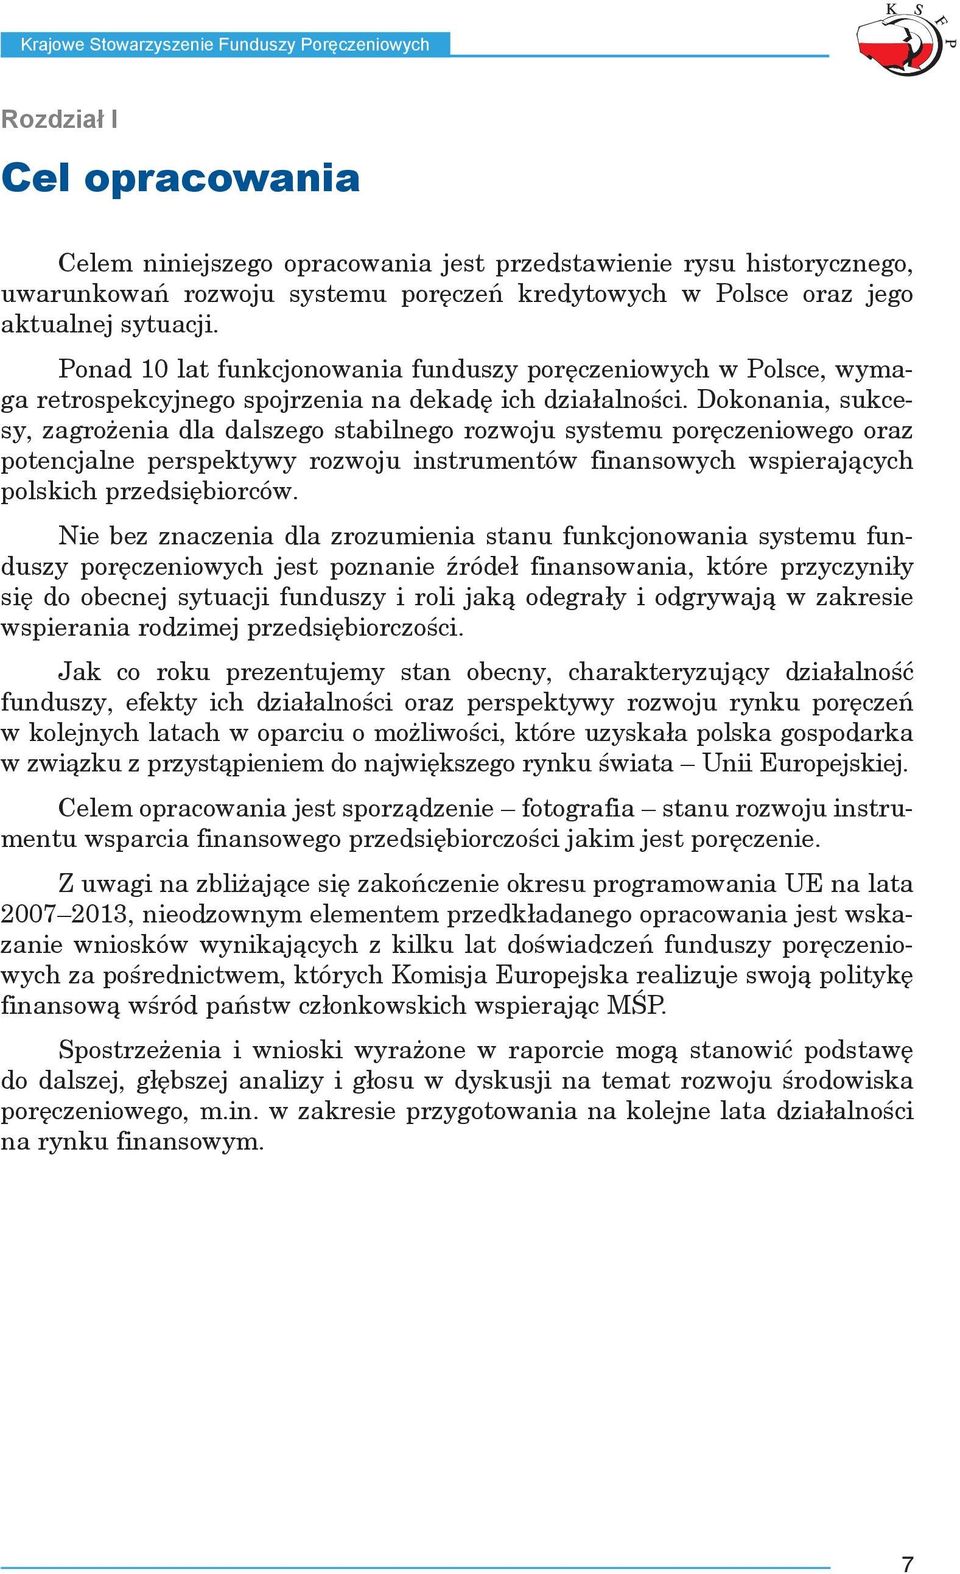 Dokonania, sukcesy, zagrożenia dla dalszego stabilnego rozwoju systemu poręczeniowego oraz potencjalne perspektywy rozwoju instrumentów finansowych wspierających polskich przedsiębiorców.